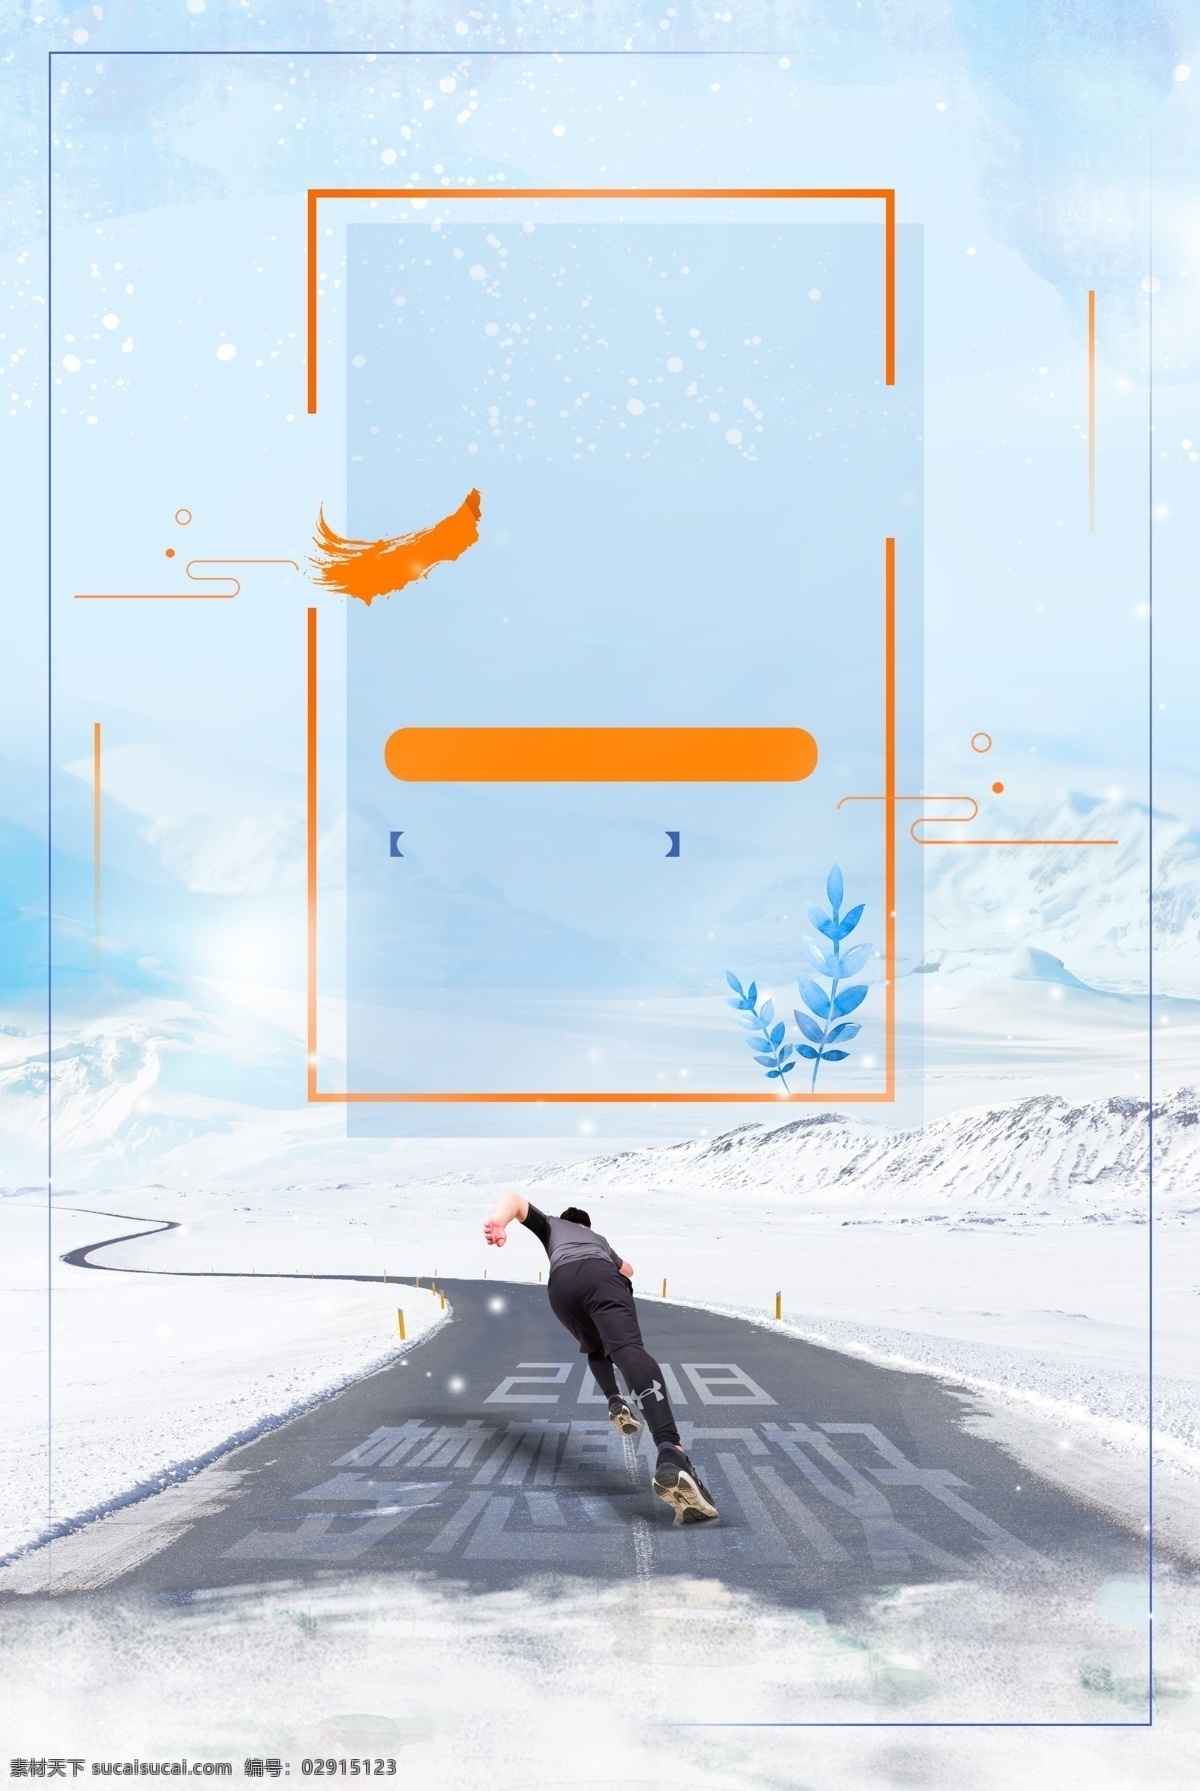 2018 追寻 梦想 海报 背景 抽象背景 边框素材 清新 简约 奔跑 努力 正能量 奔跑背景 雪地